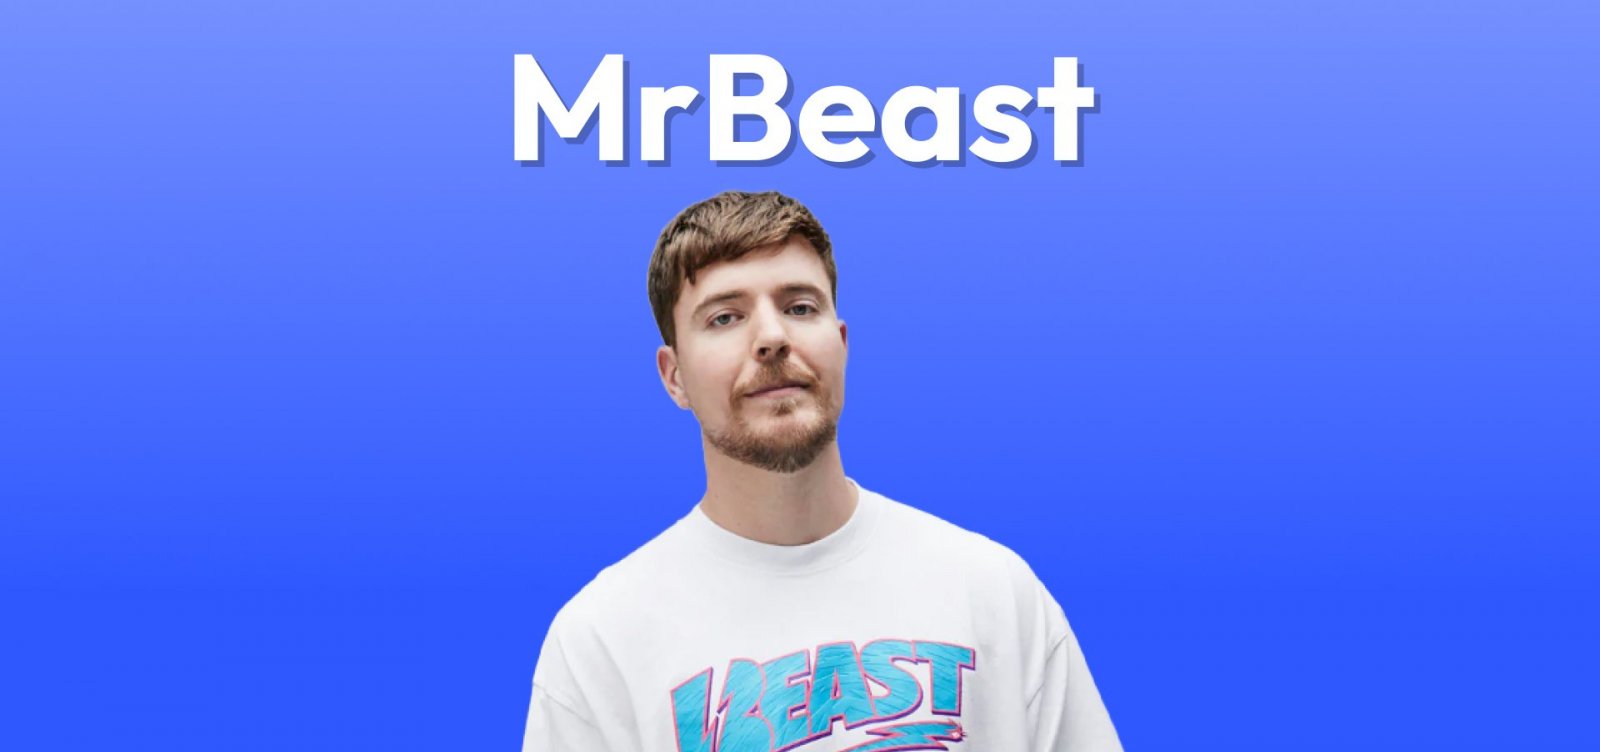 MrBeast se torna o canal com o maior número de inscritos no YouTube